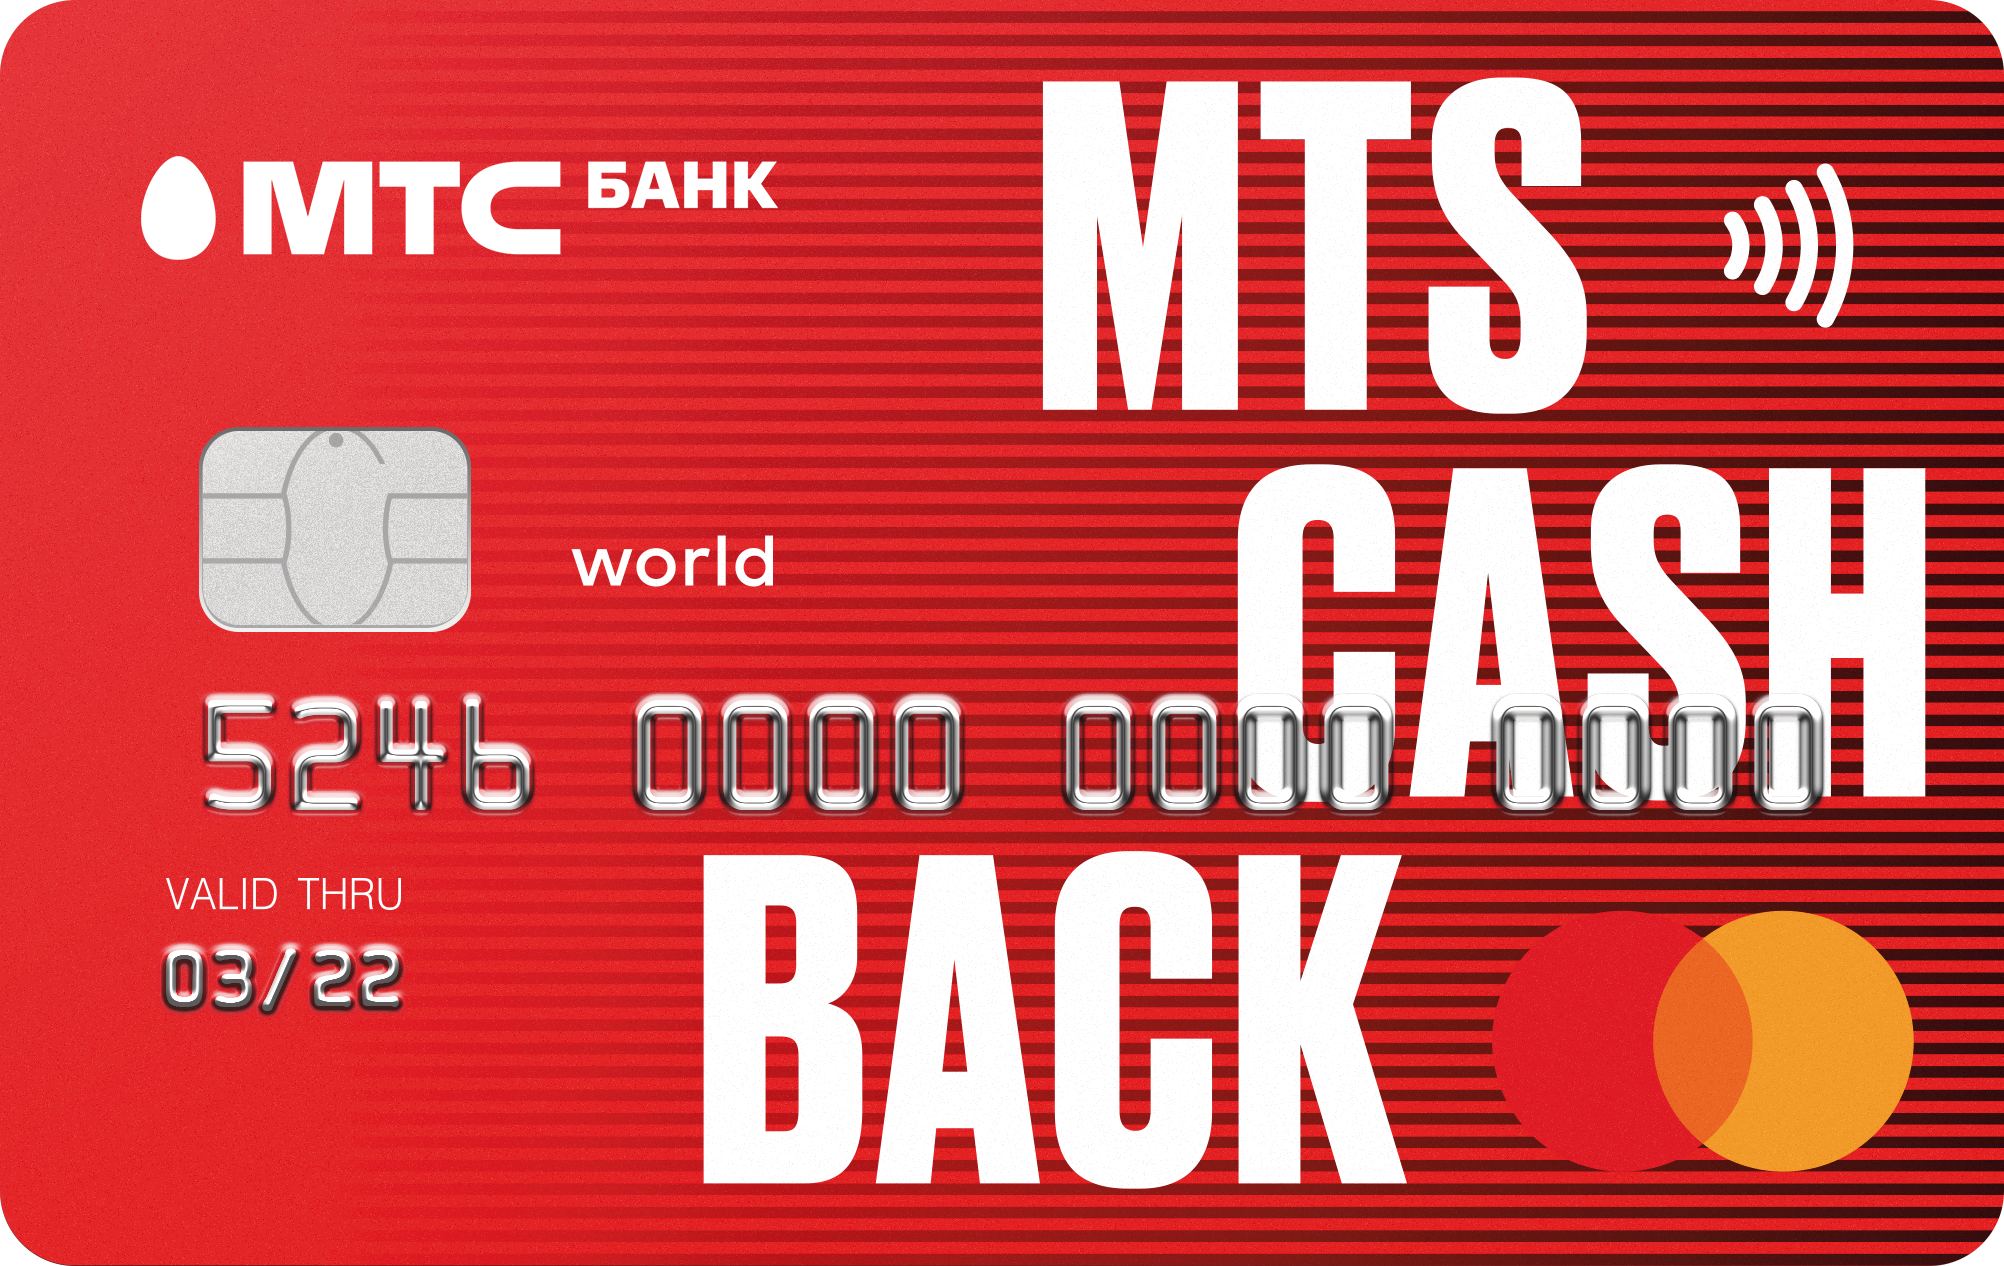 Тарифы кредитной карты weekend от мтс банка. как получить и пользоваться